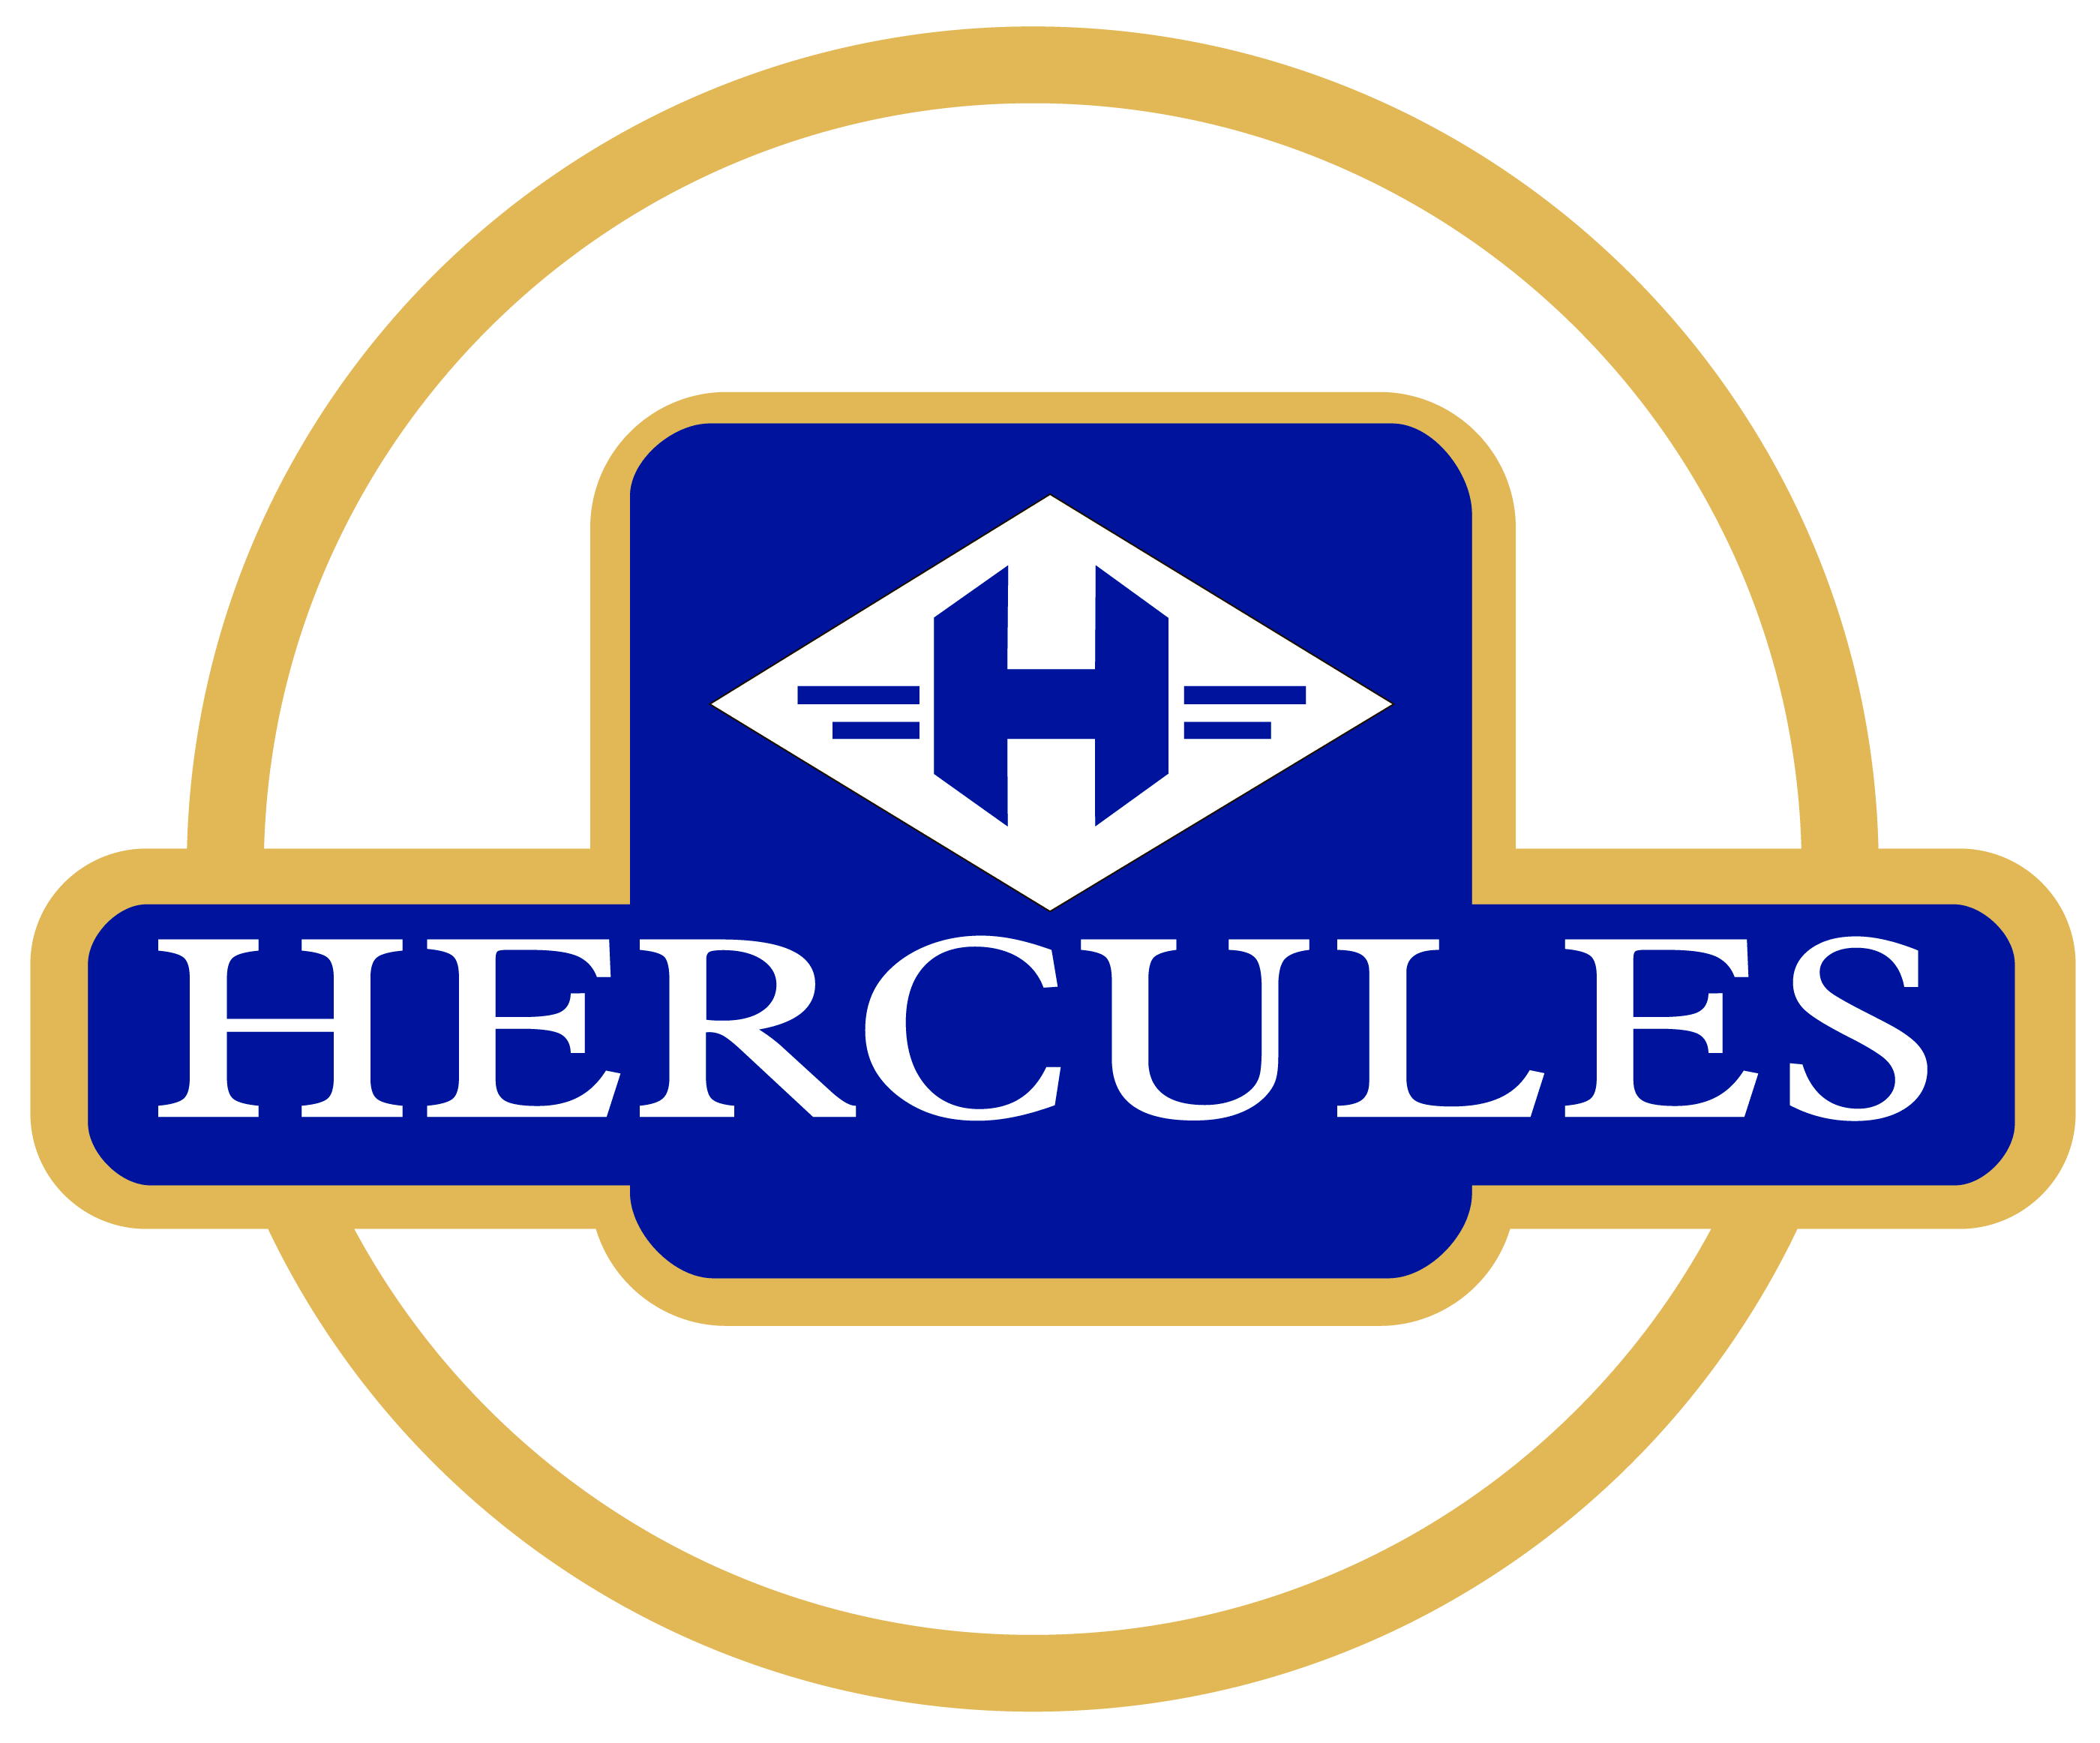 Hercules Logo - Hercules Motorcycles Logo. Motorcycle Logos. Motorcycle logo